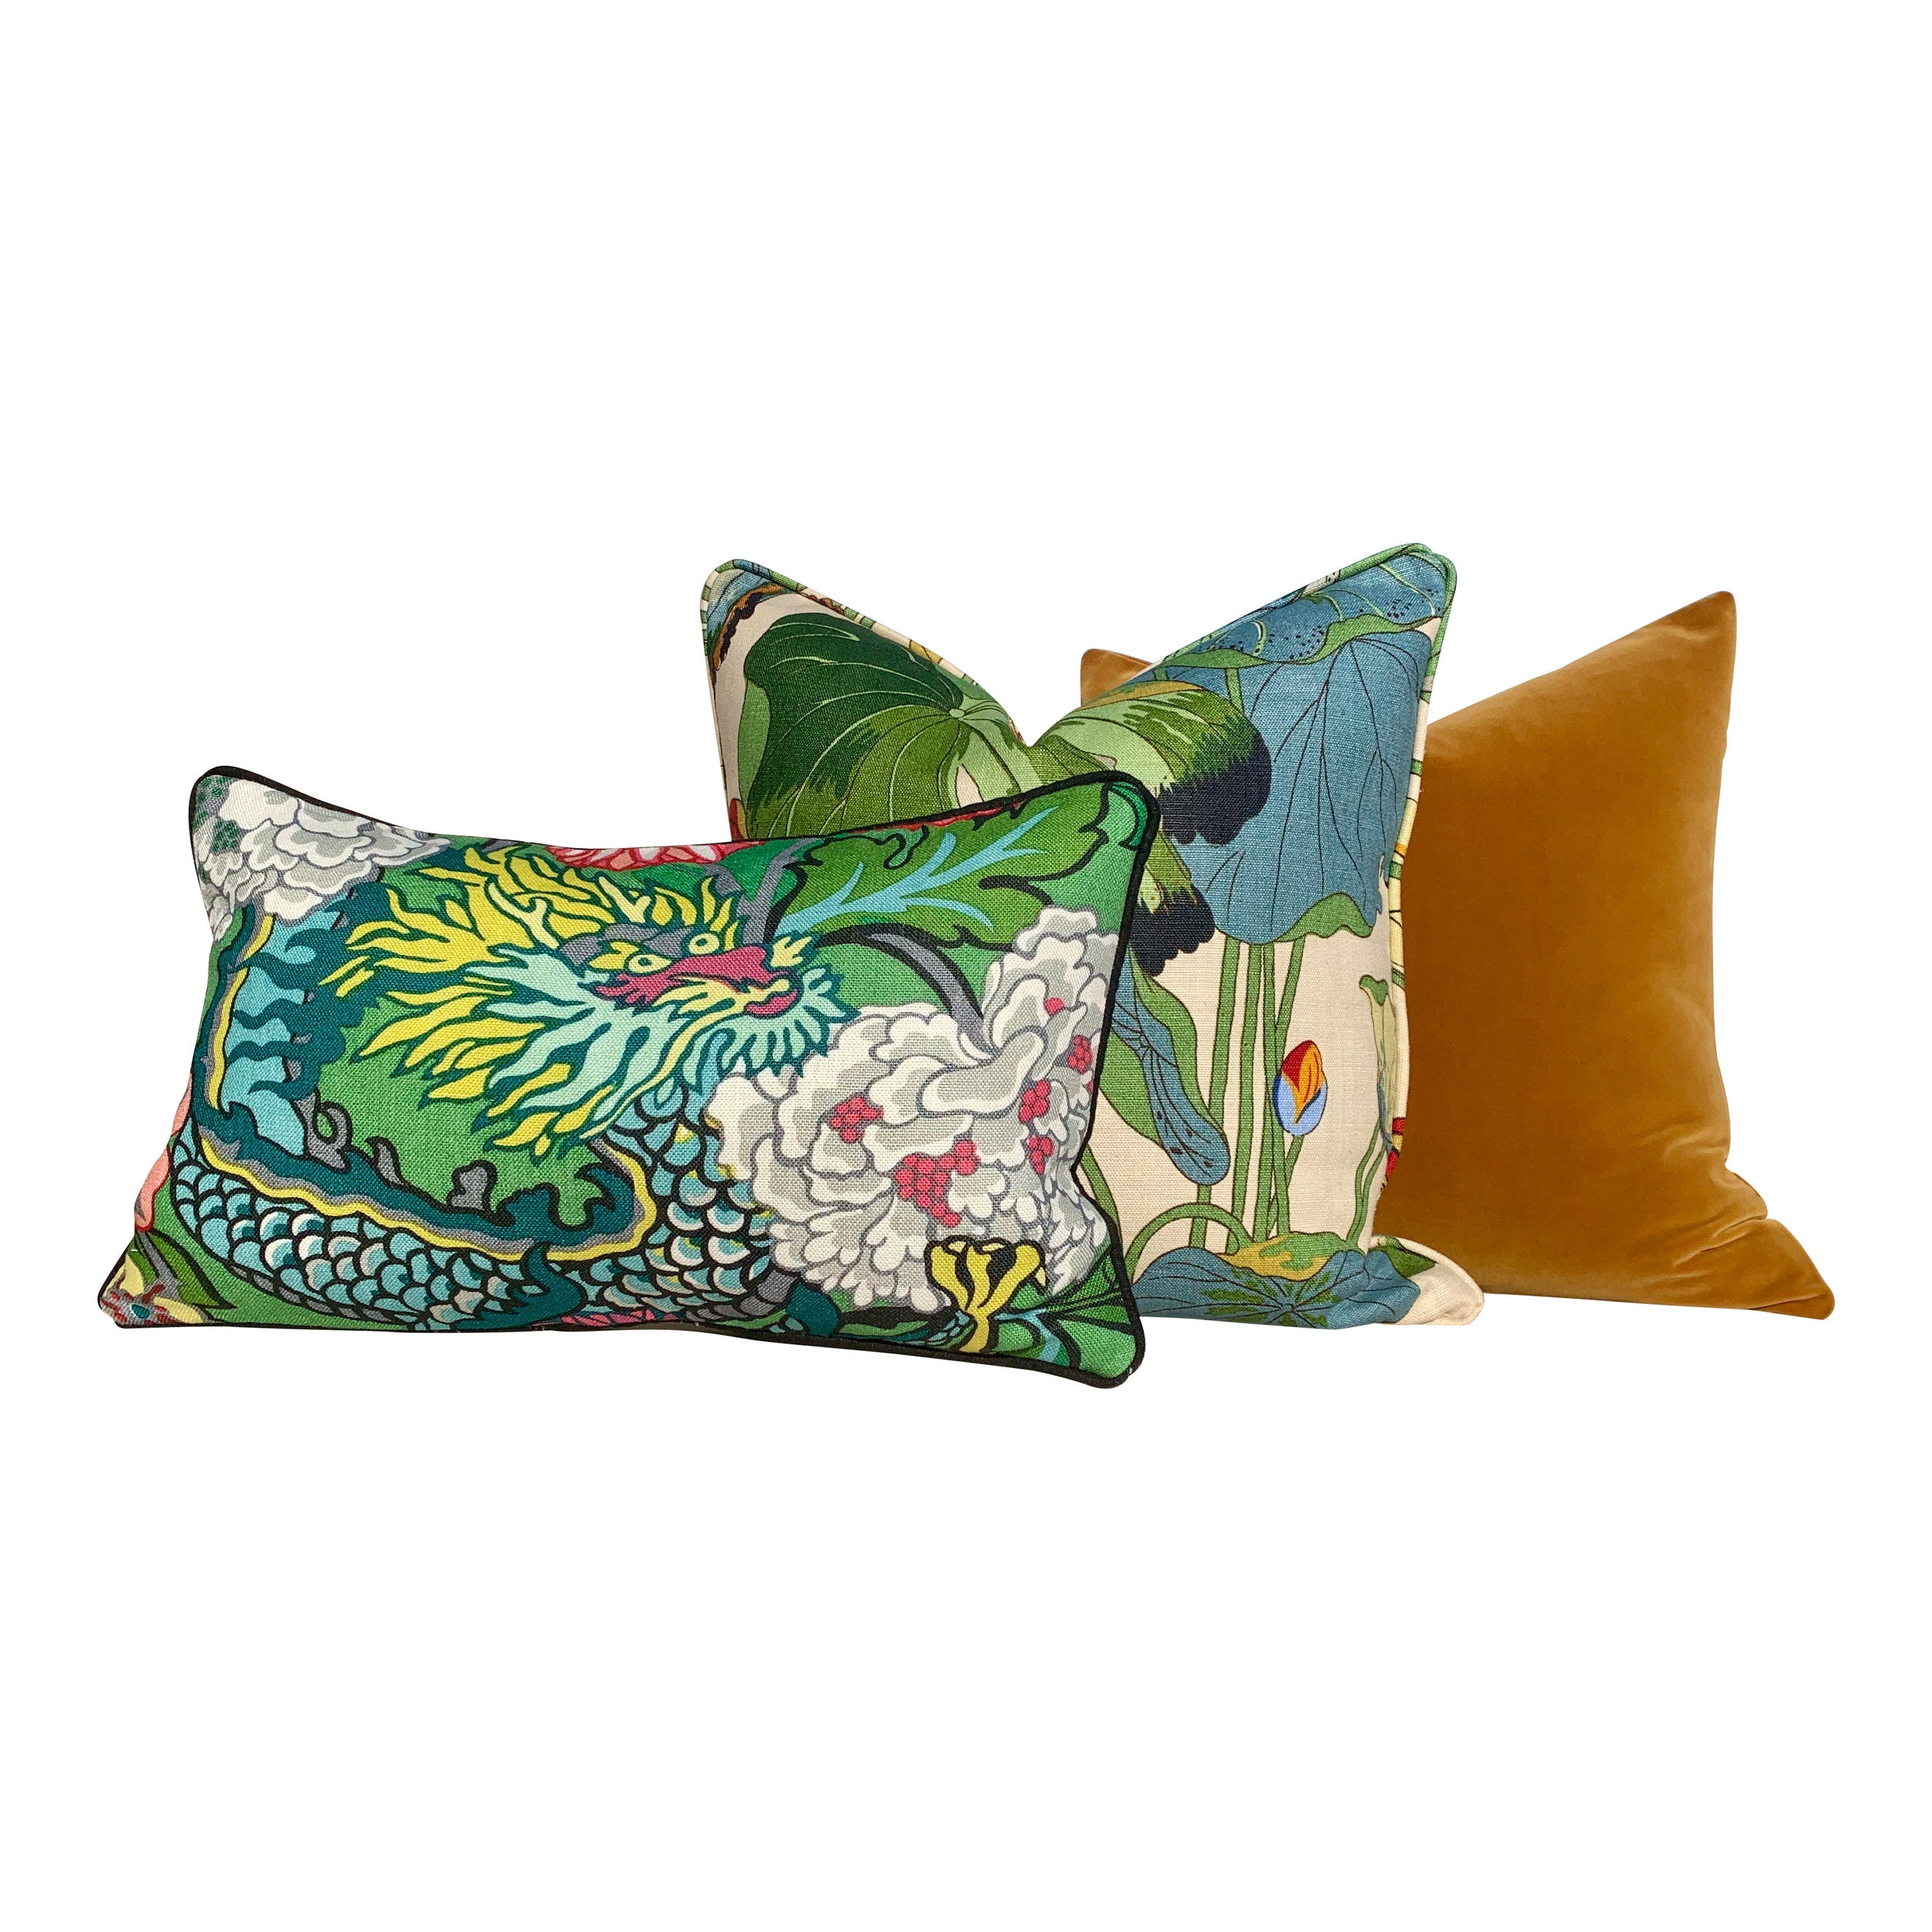 Chiang Mai Dragon LInen Pillow in Emarald. Lumbar Dragon Pillow. Schumacher Decorative Pillow.